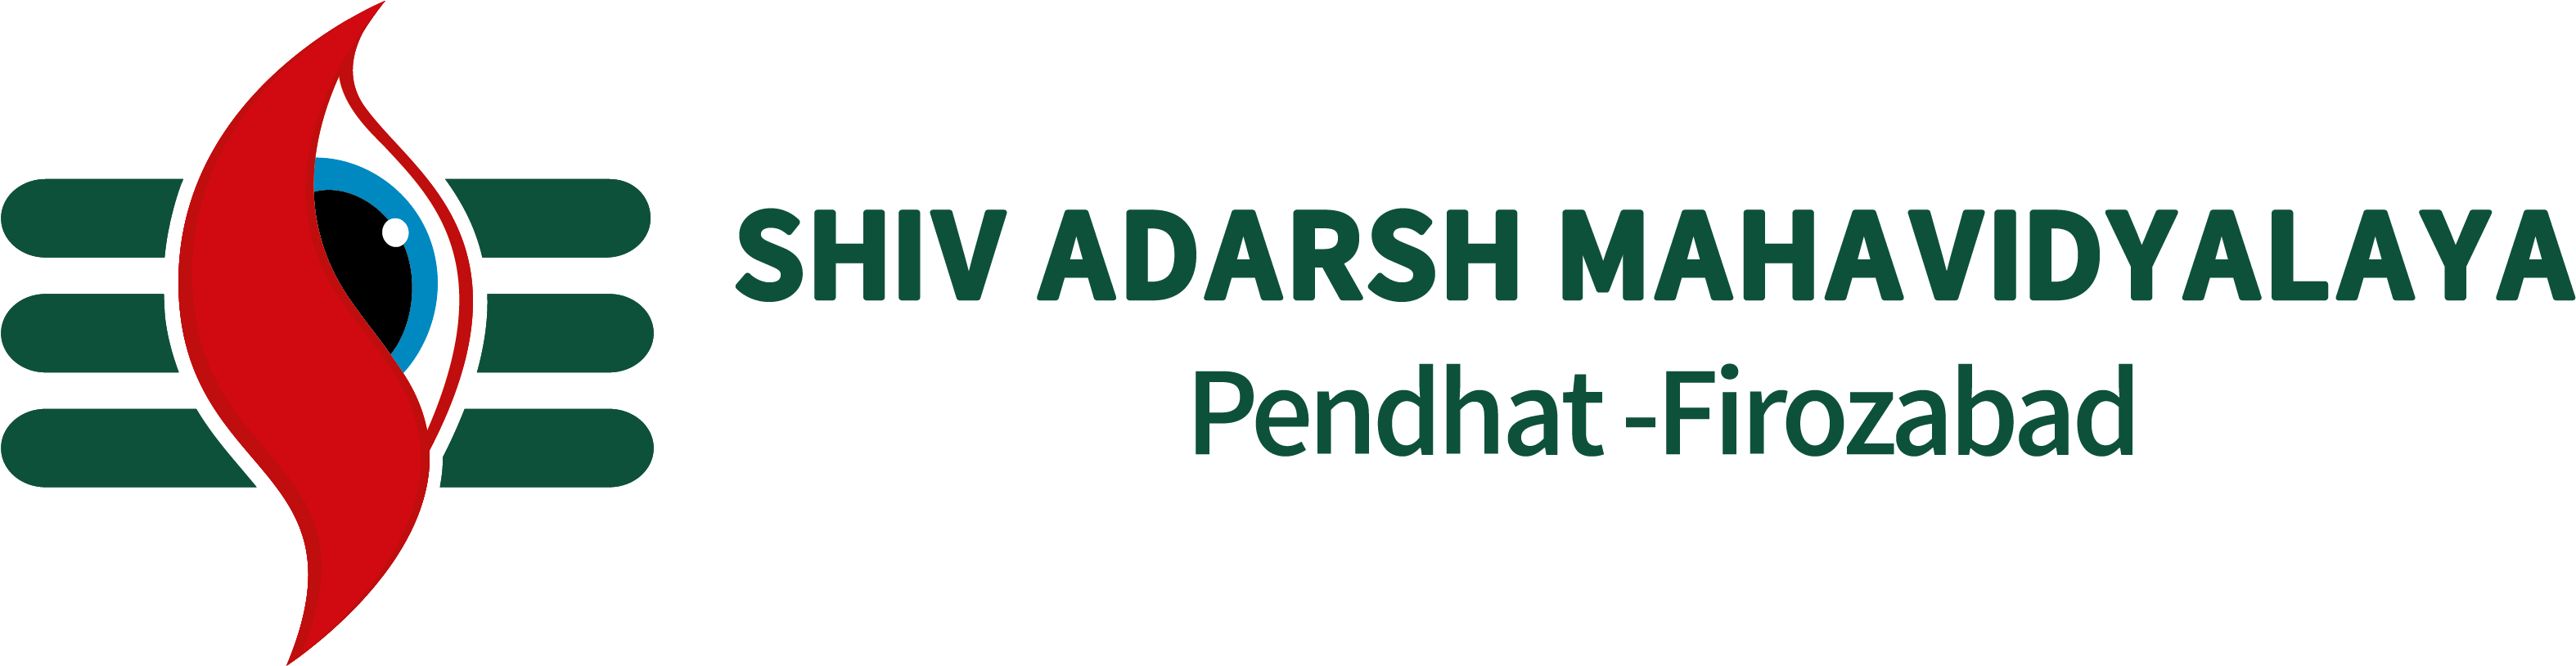 Logo - Shiv Adarsh Mahavidyalaya Shikohabad (3275x904), Png Download